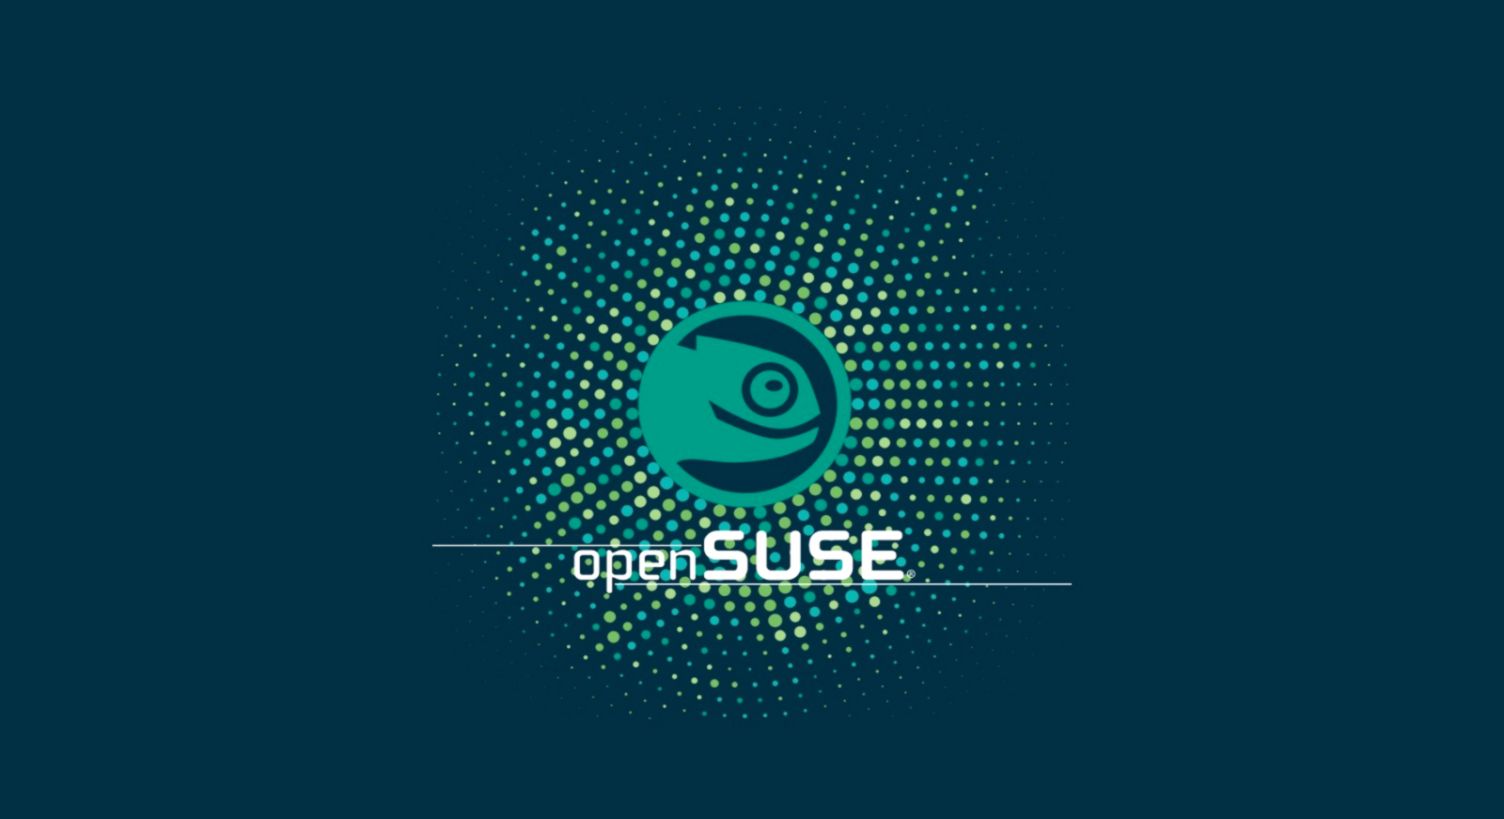 Open Suse Wallpaper List